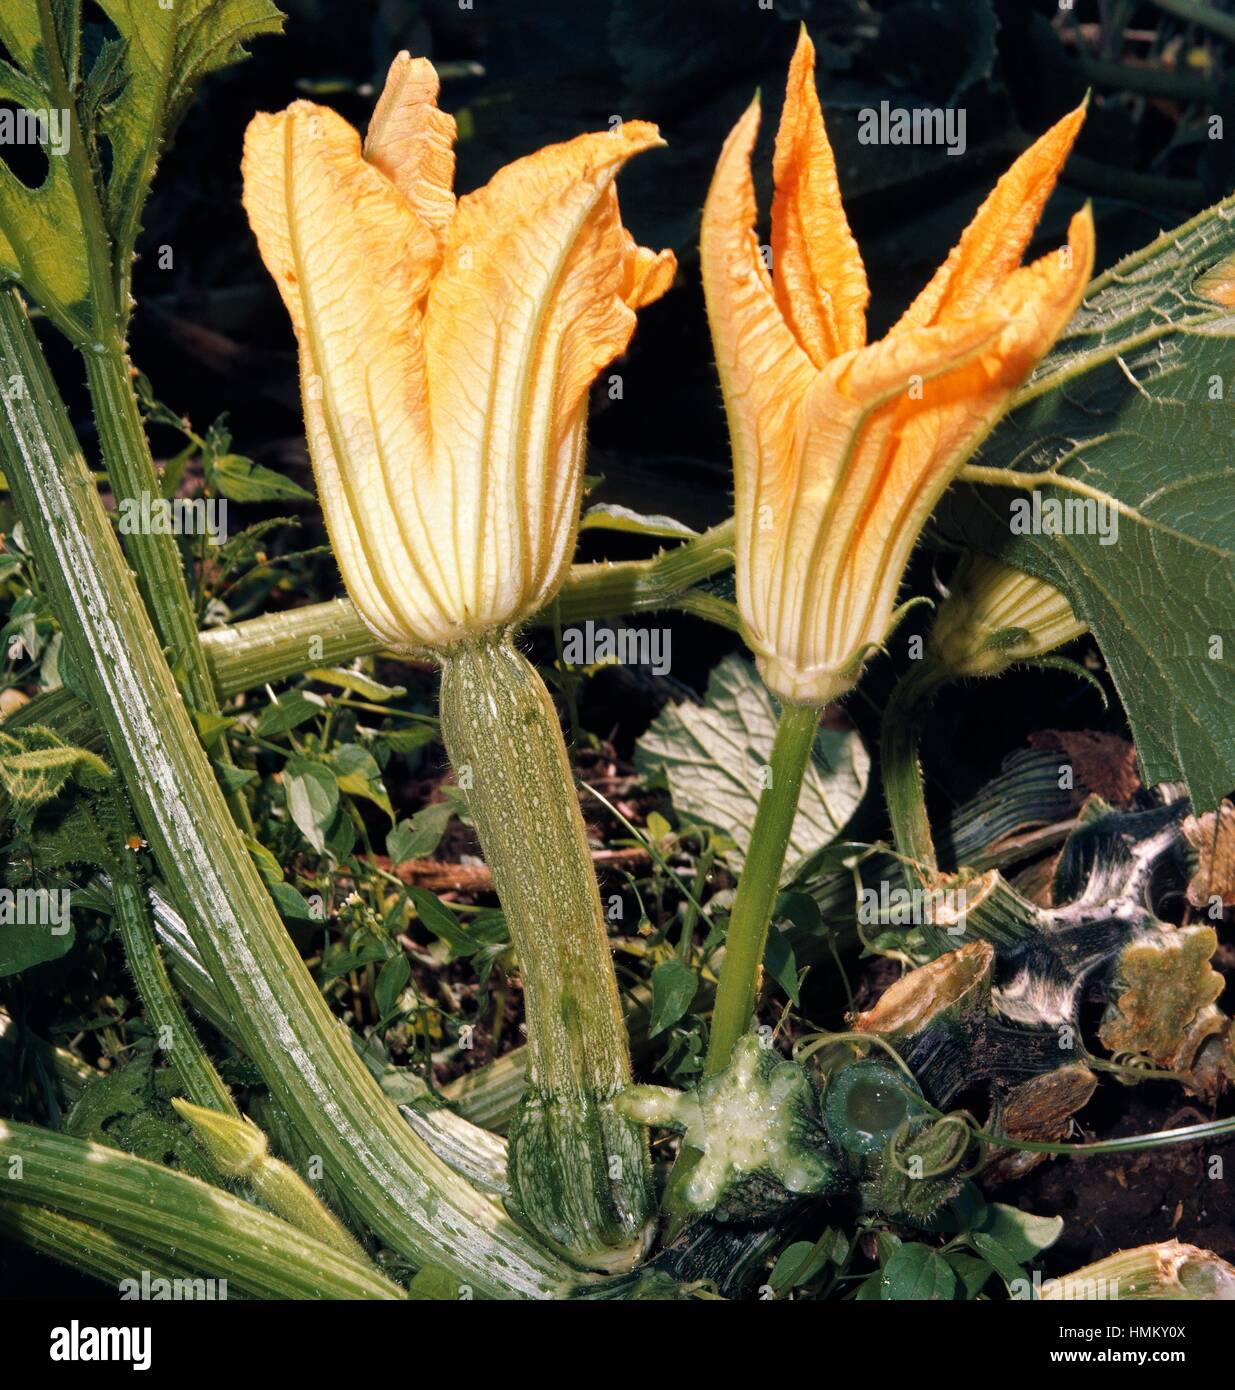 Zucchini or Courgette with flower (Cucurbita pepo), Cucurbitaceae. Stock Photo